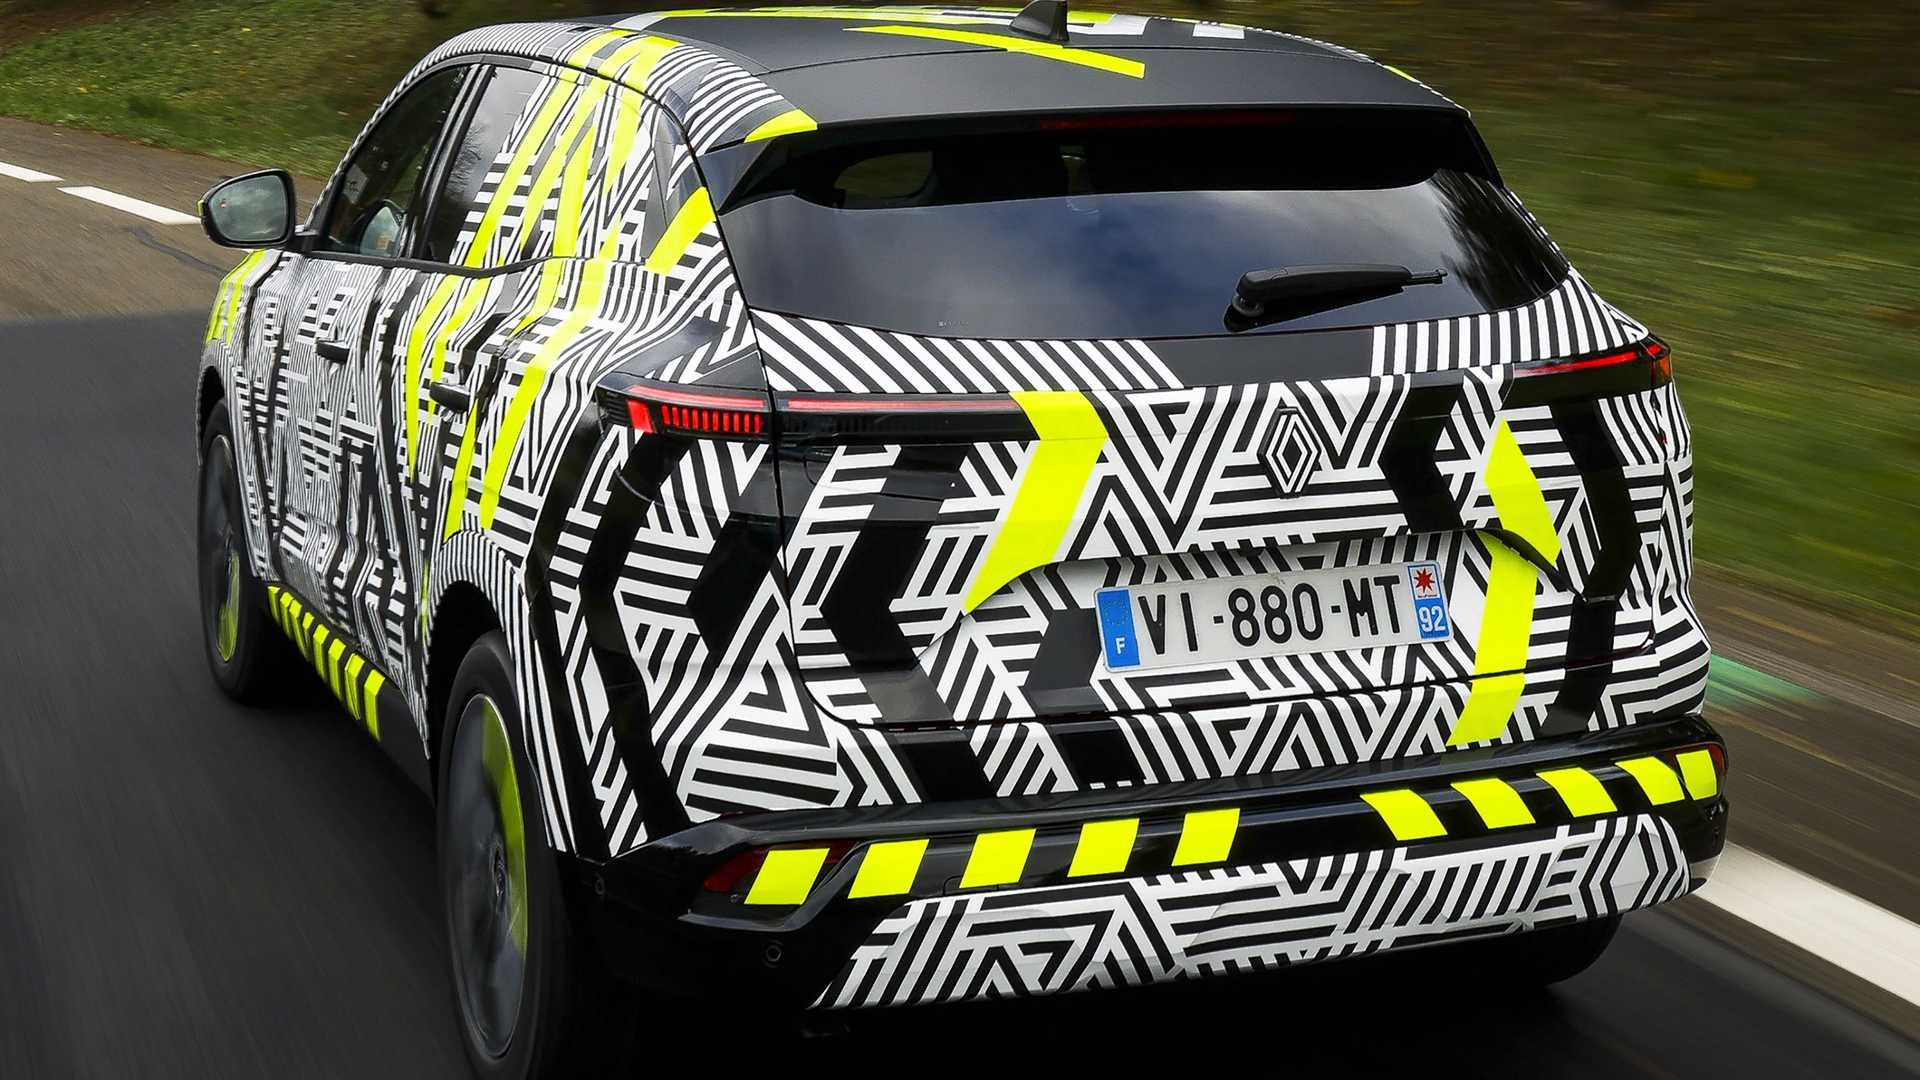 2022 Renault Austral'in kamuflajlı görselleri paylaşıldı